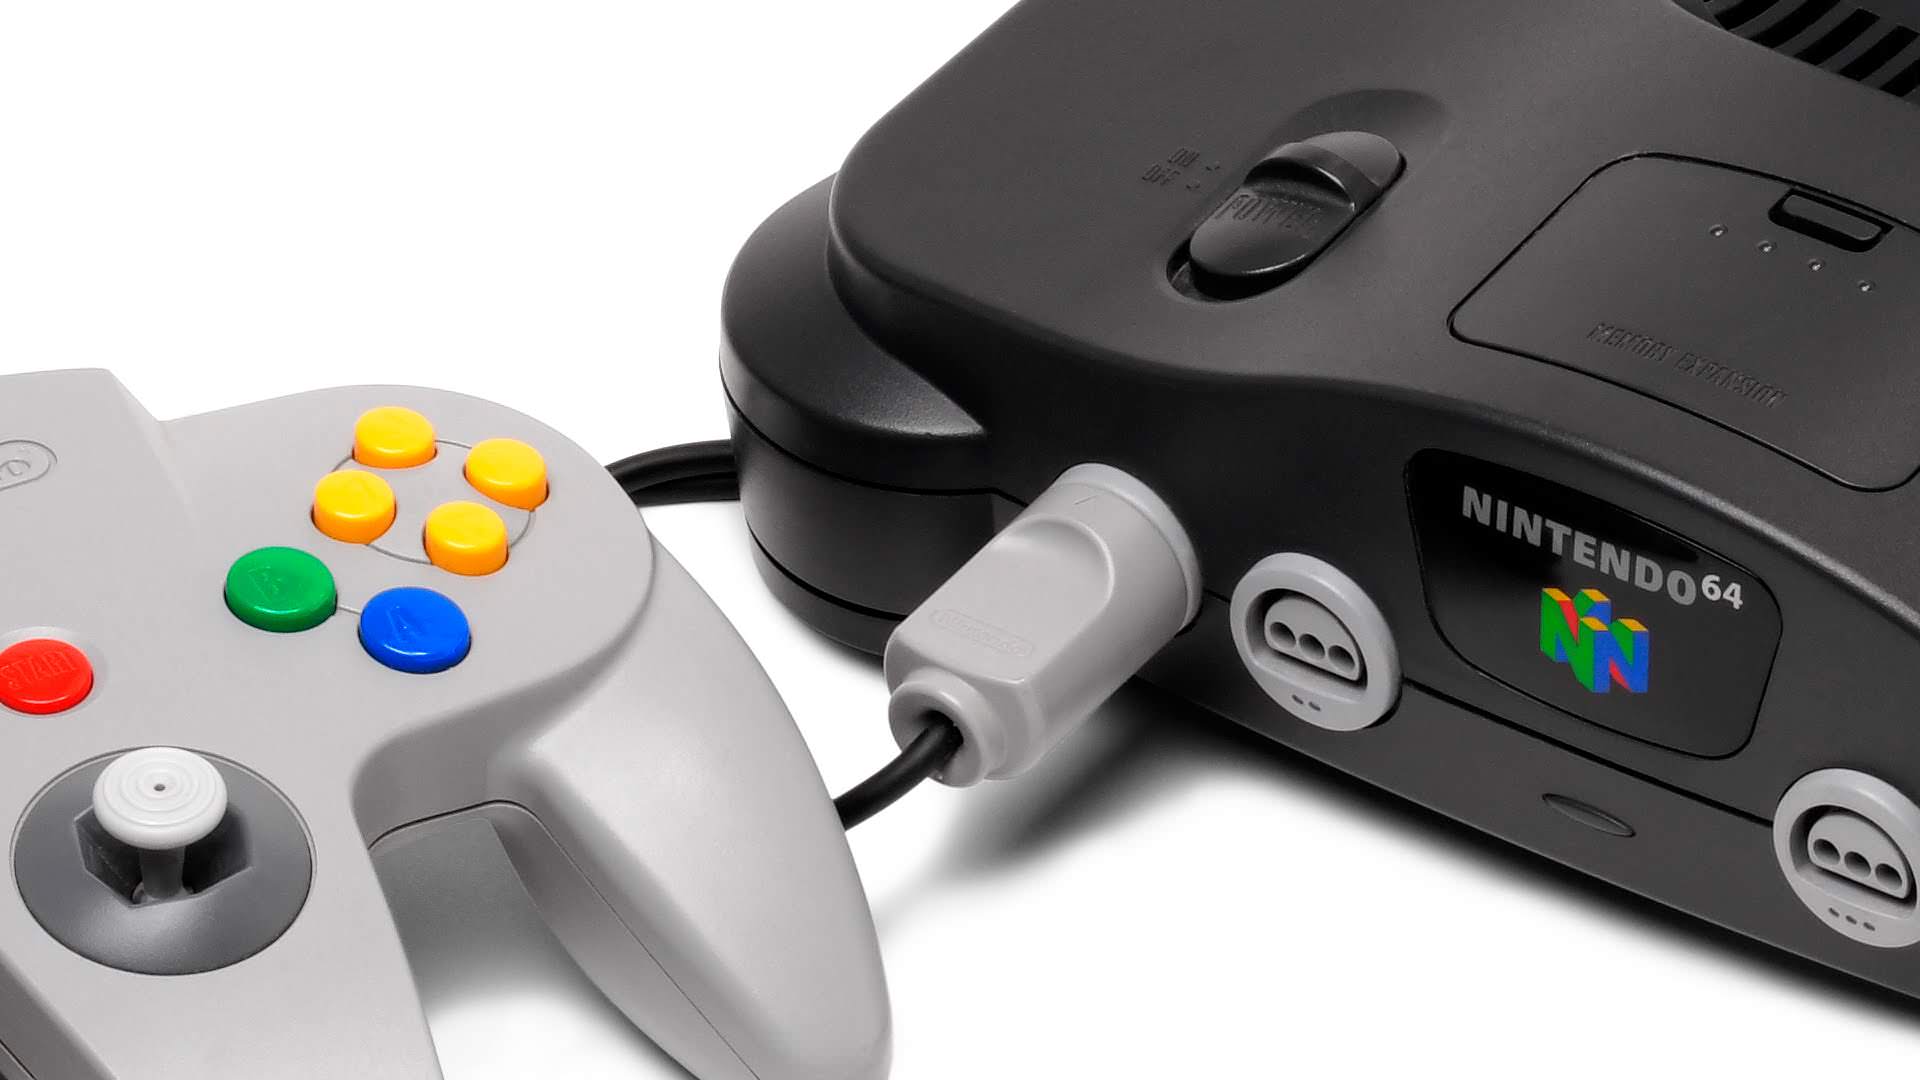 Salen a la luz 5 colores inéditos de Nintendo 64